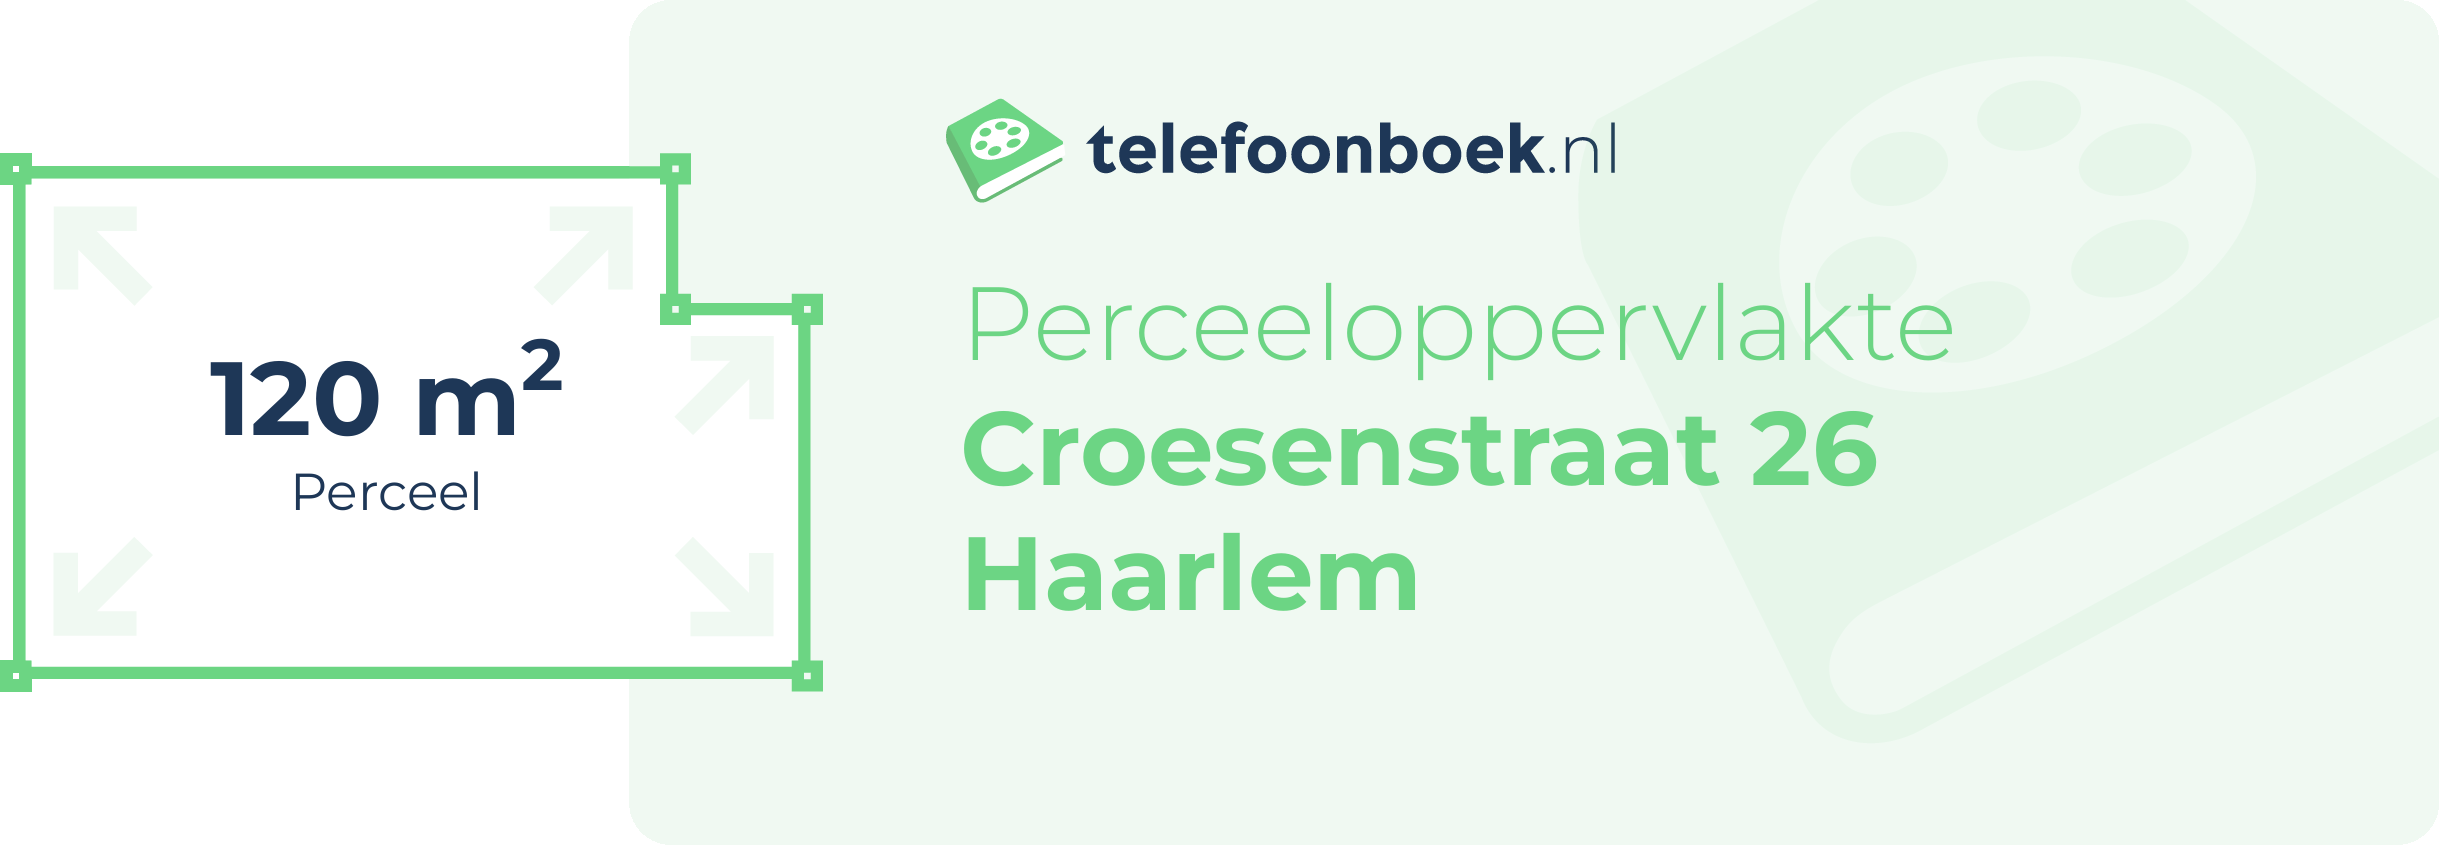 Perceeloppervlakte Croesenstraat 26 Haarlem